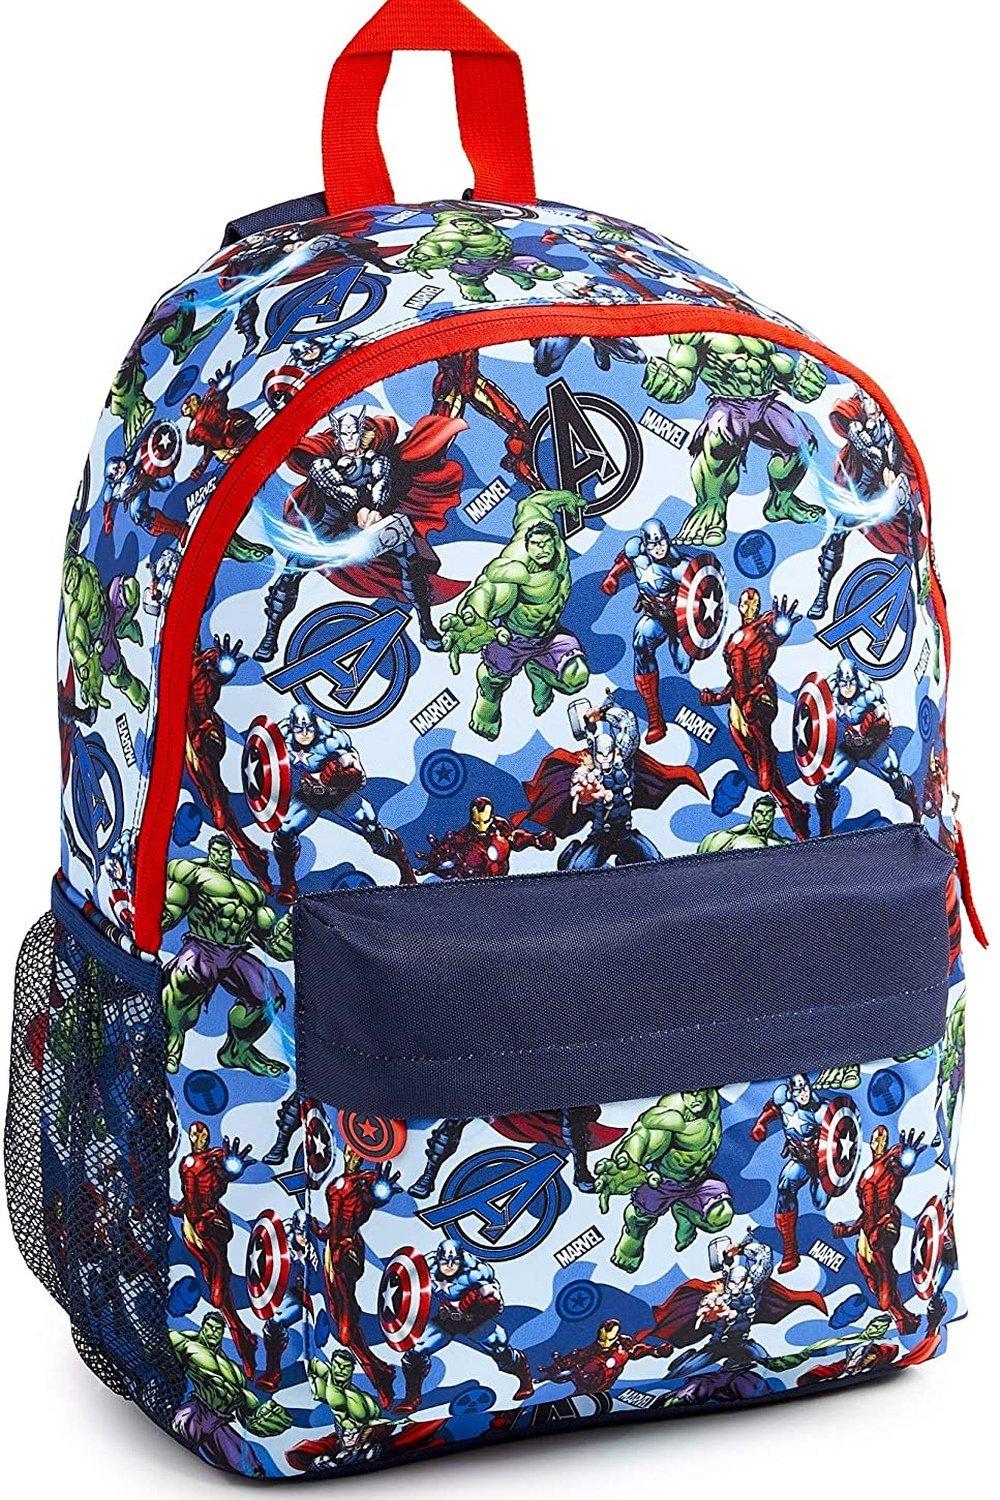 Большой рюкзак Avengers Superheros Marvel, синий большой рюкзак avengers superheros marvel синий